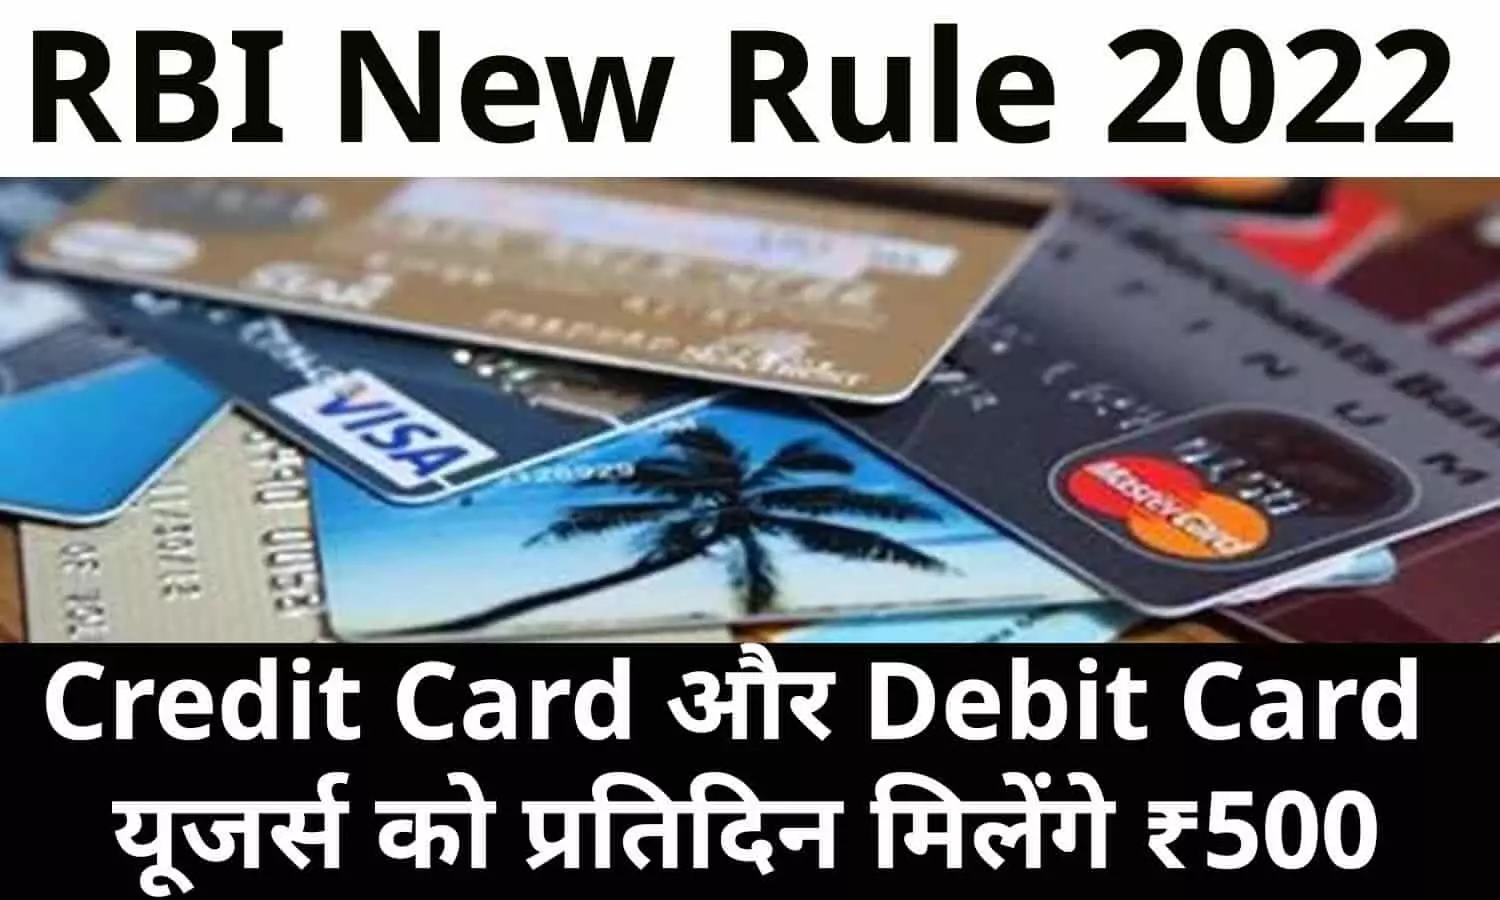 RBI New Rule 2022: खुशखबरी! Credit Card और Debit Card यूजर्स को प्रतिदिन मिलेंगे ₹500